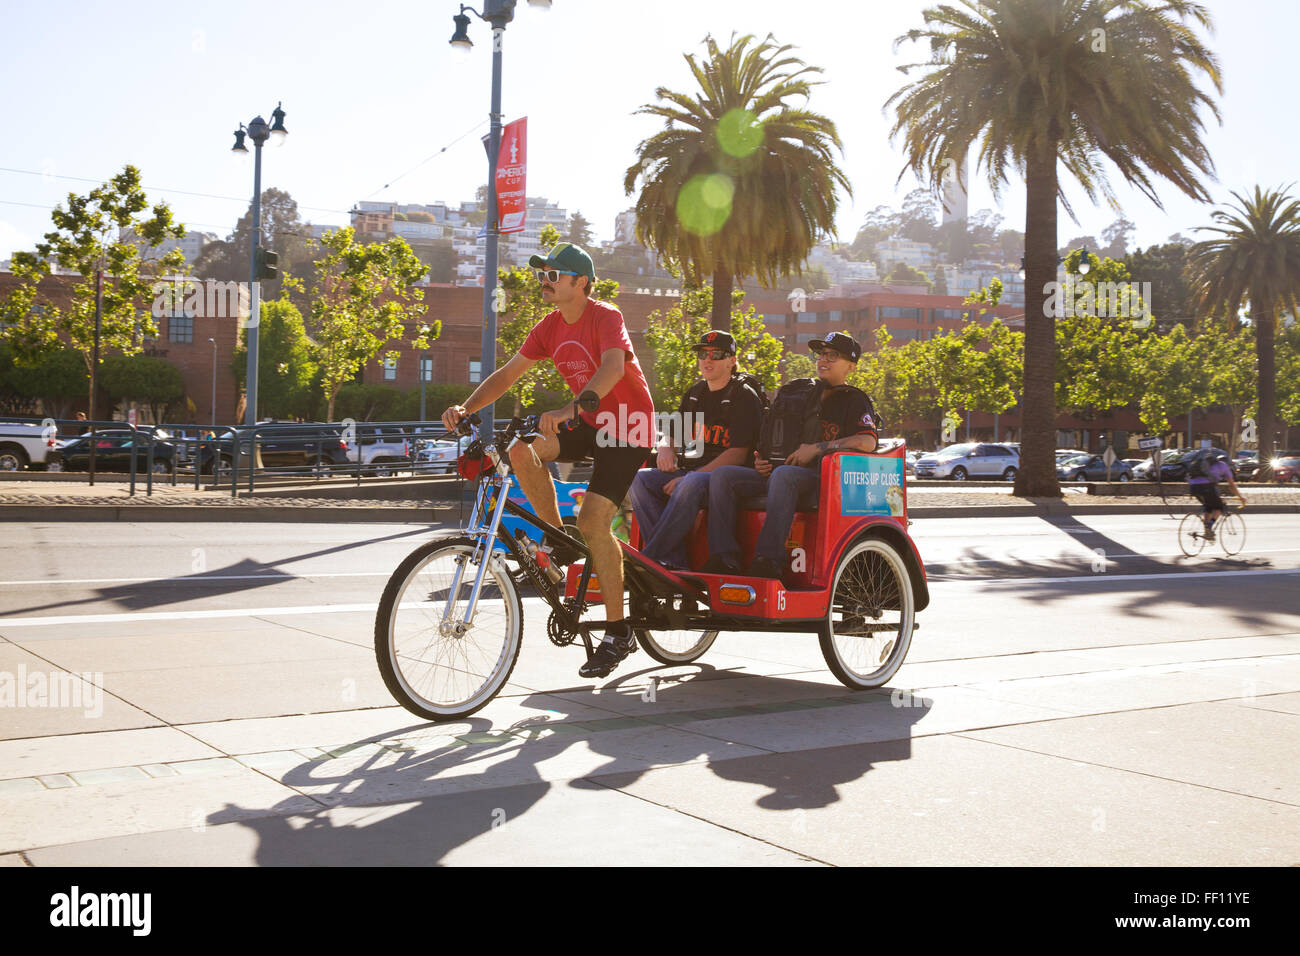 Un chauffeur de taxi moto transportant deux passagers de sexe masculin, le tout sur une chaude journée ensoleillée le long de l'Embarcadero de San Francisco. Banque D'Images